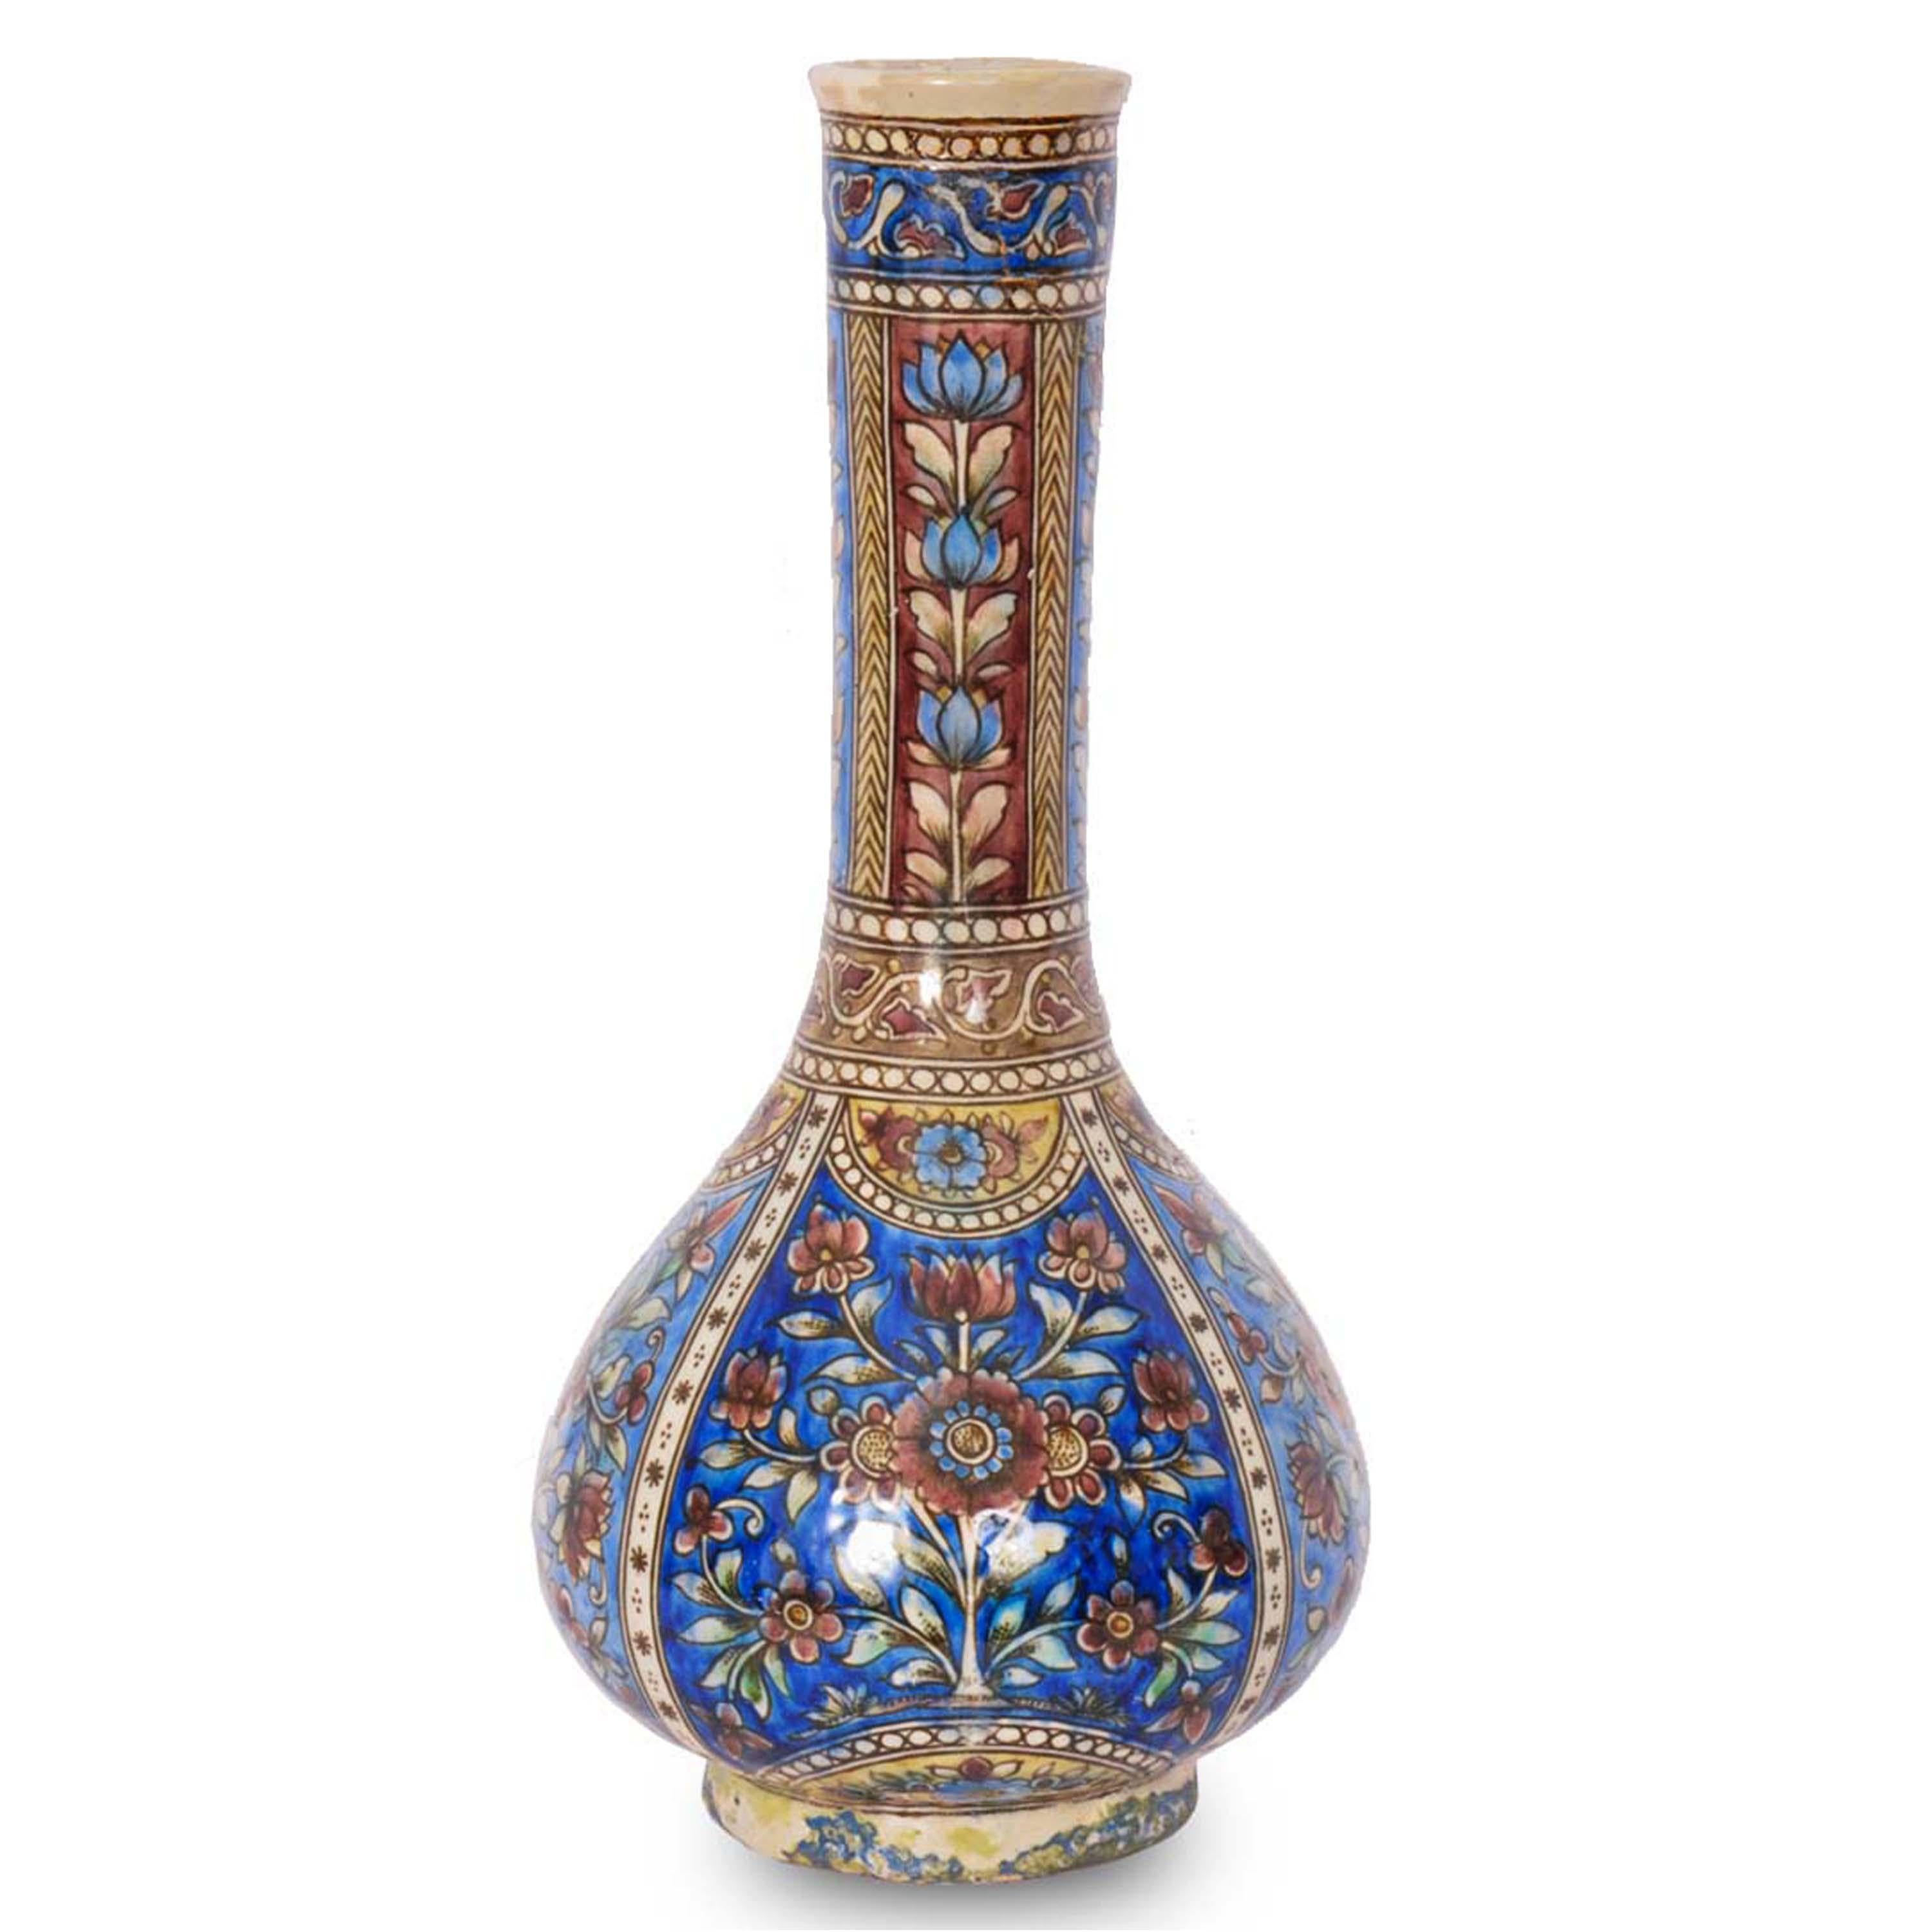 Une bonne paire de vases-bouteilles en poterie islamique ottomane Iznik/Kutahya du début du XIXe siècle, Turquie, vers 1820.
Les vases sont de forme bouteille avec une bouche évasée et un col effilé, avec des bases de forme globulaire et reposant